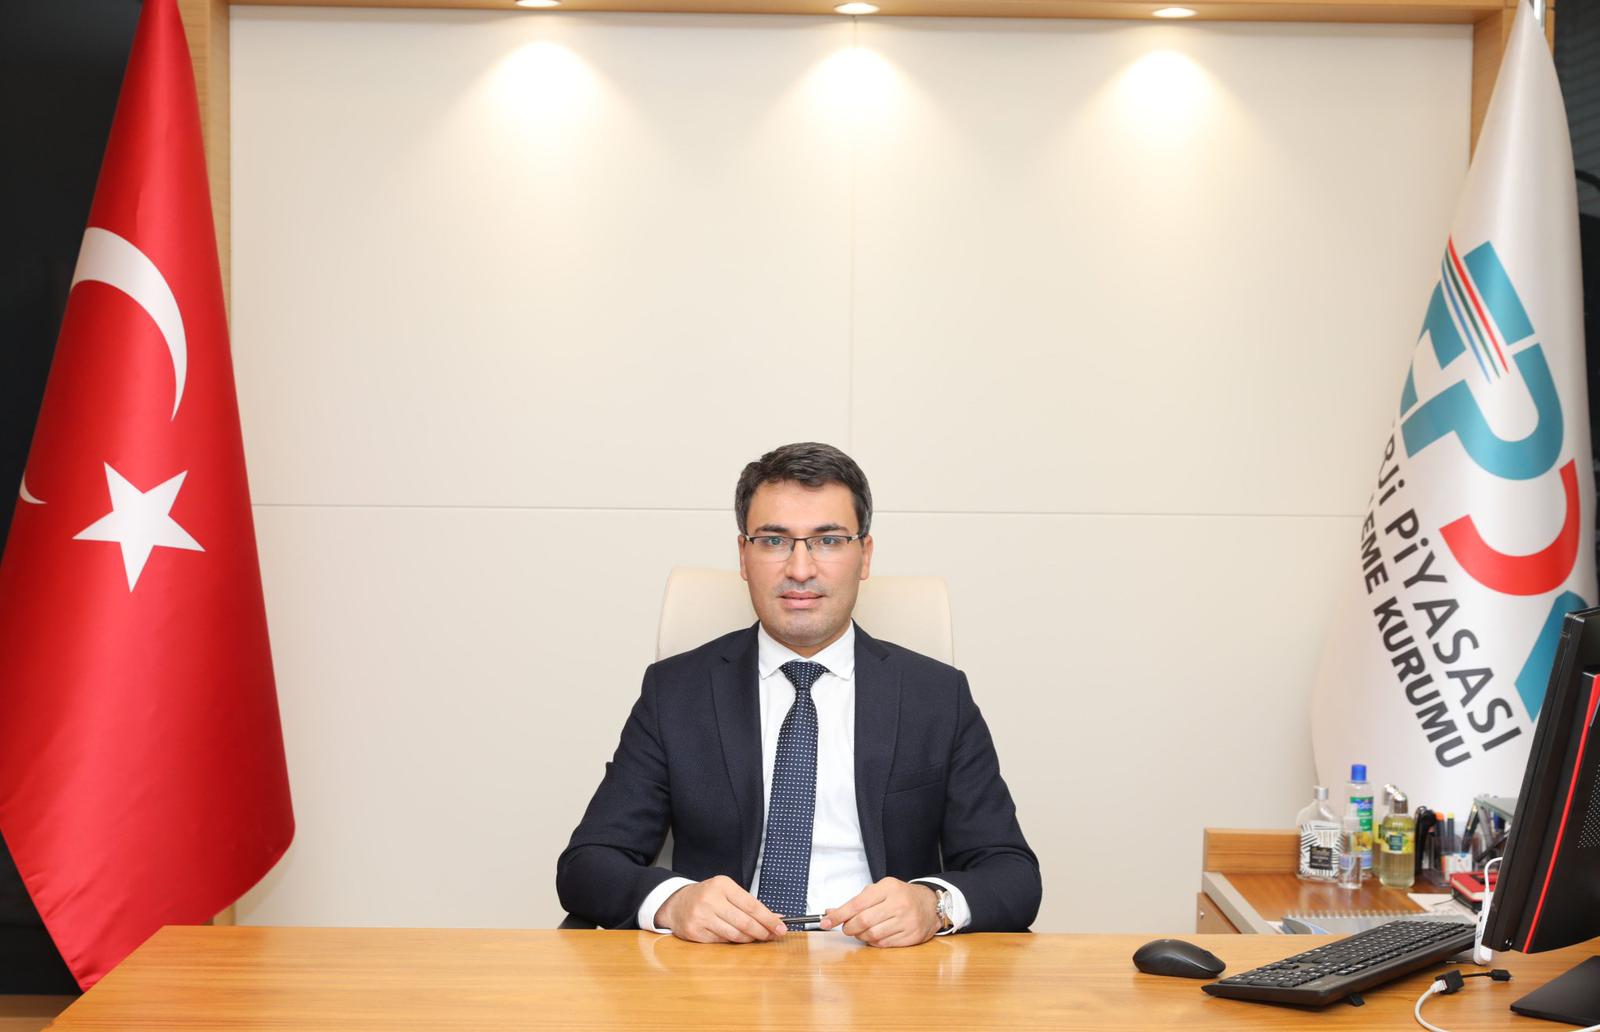 EPDK Başkan Yardımcılığına Ahmet Özkaya atandı